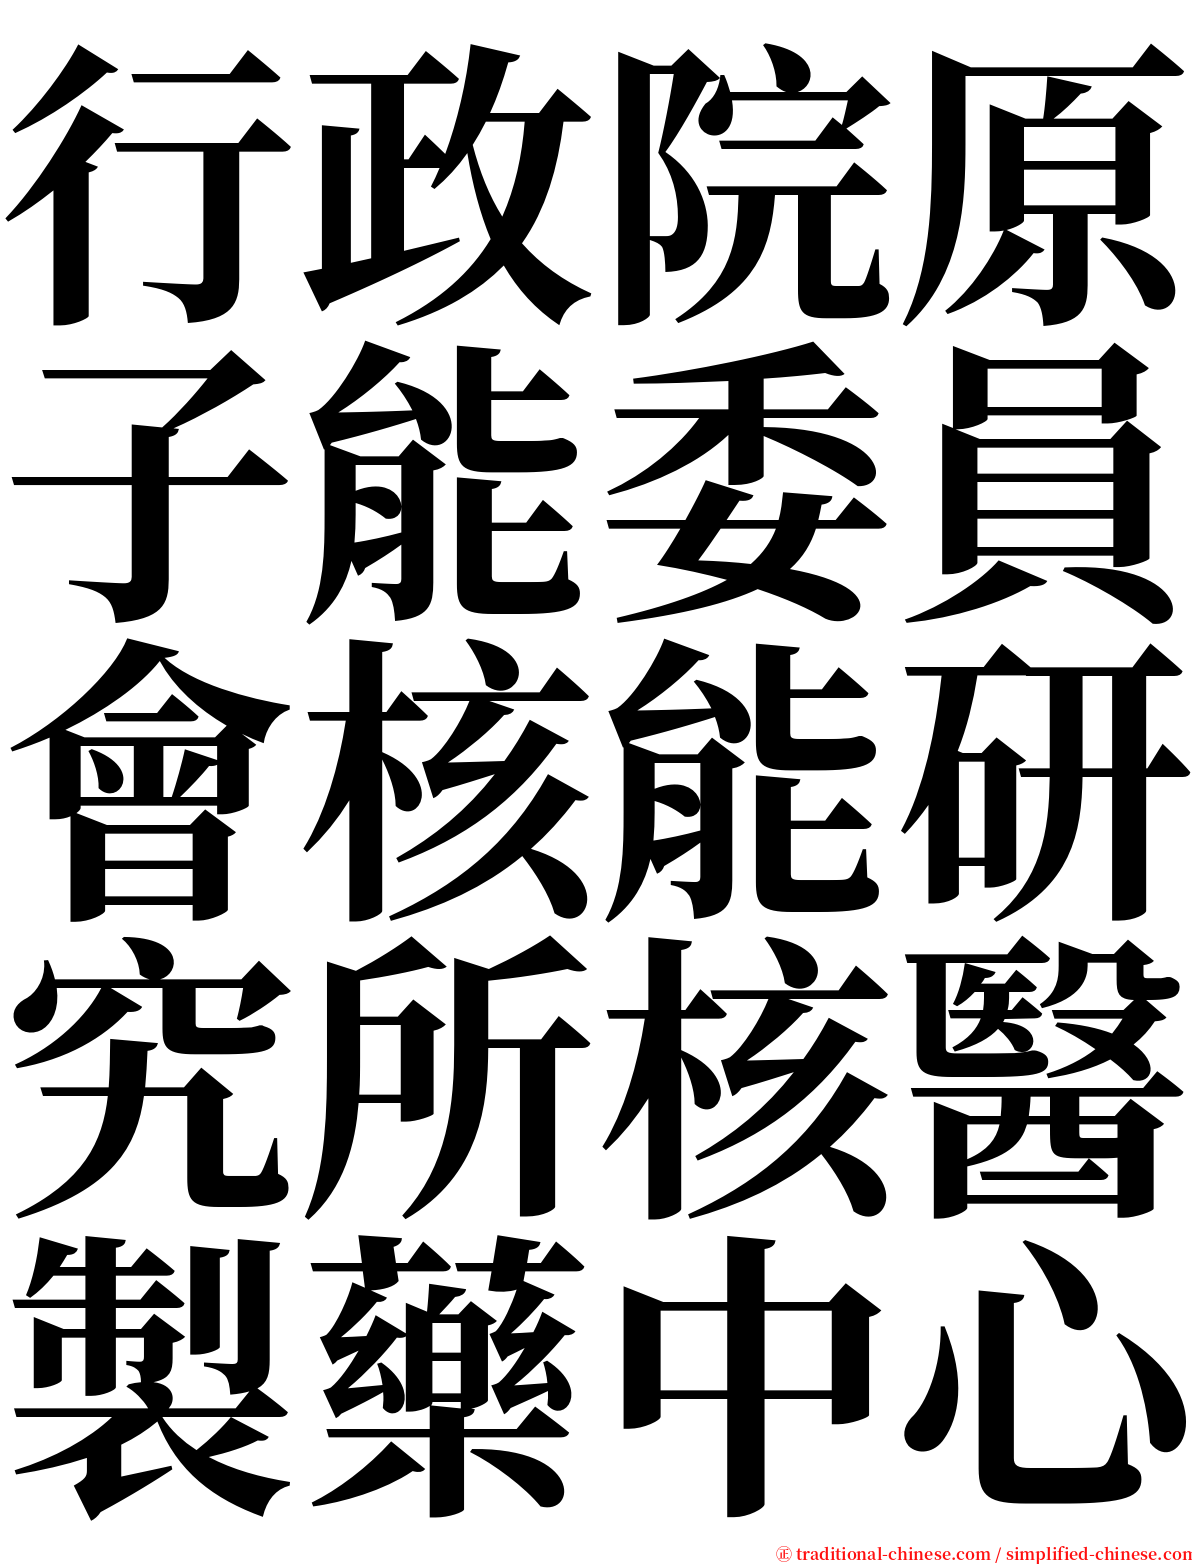 行政院原子能委員會核能研究所核醫製藥中心 serif font